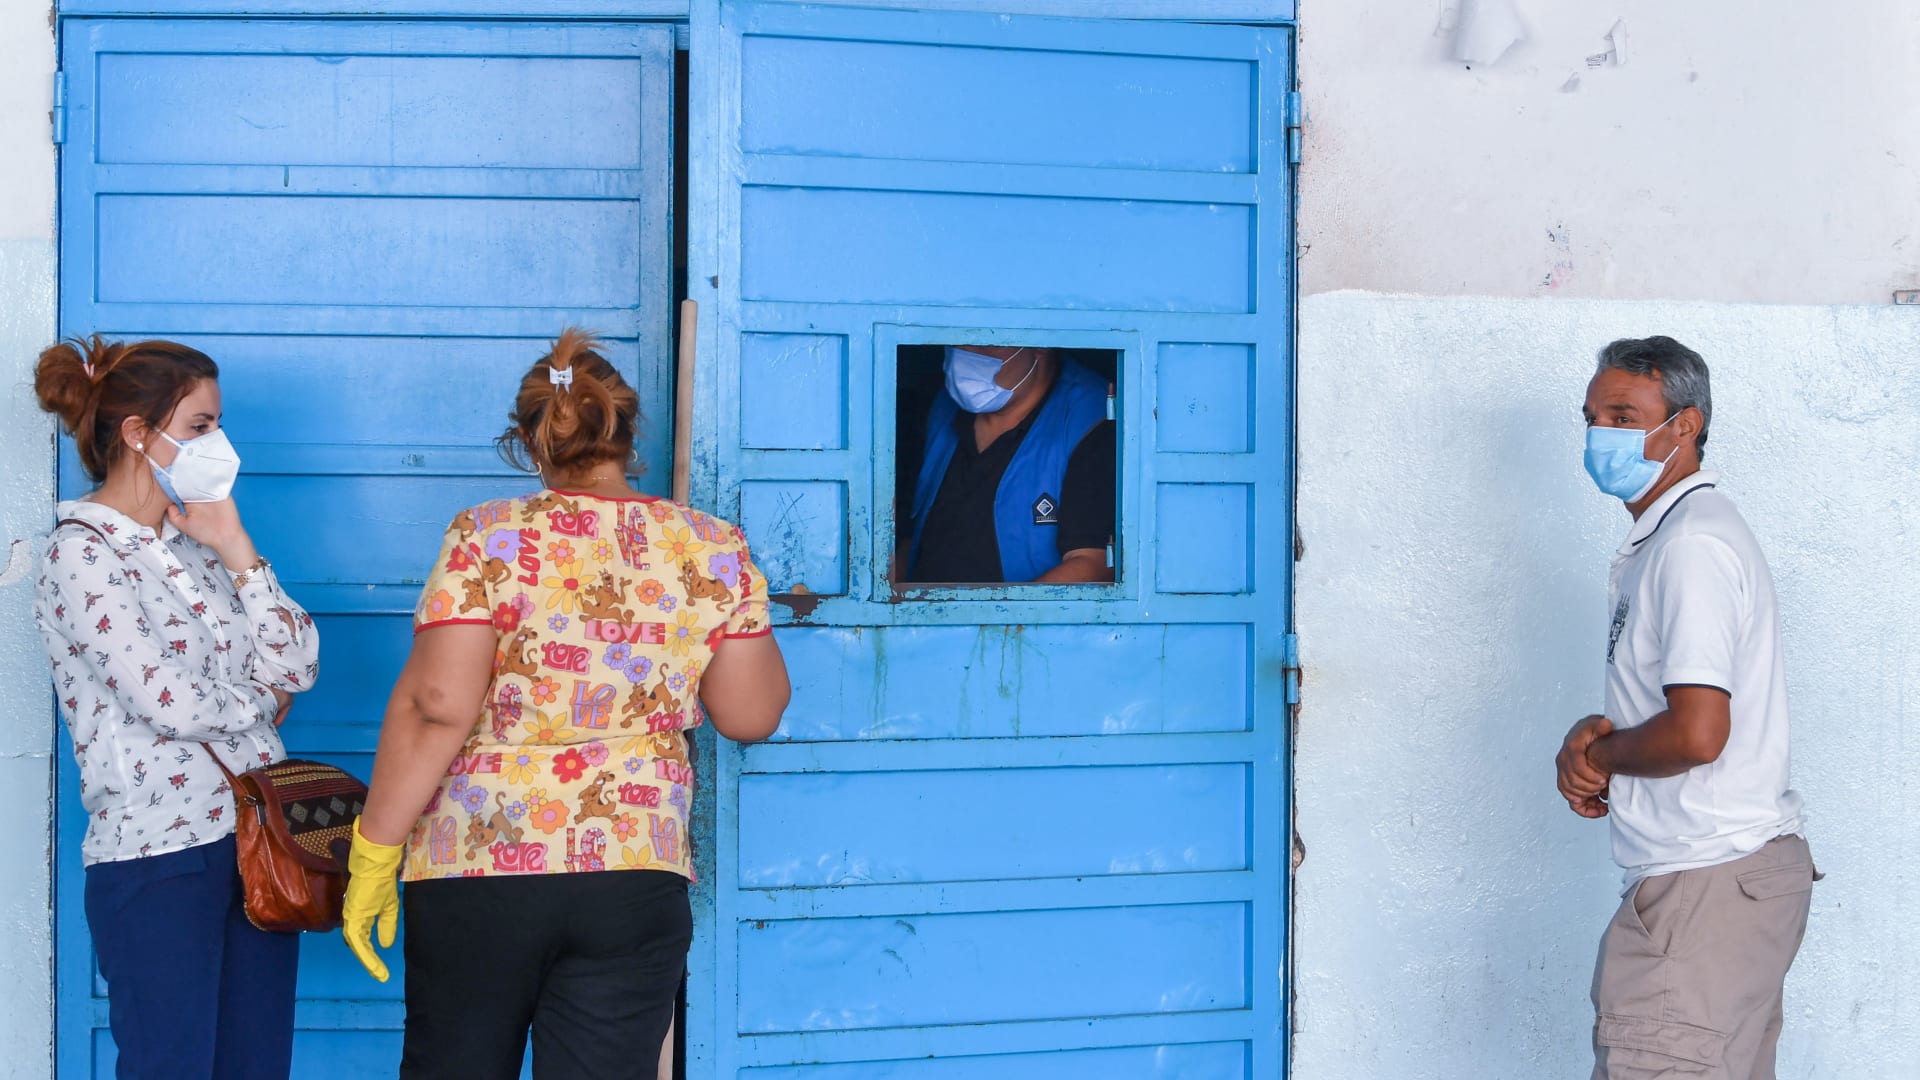 تونسيون ينتظرون خارج غرفة الطوارئ بمستشفى شارل نيكول في العاصمة تونس ، في 16 يوليو 2021 ،